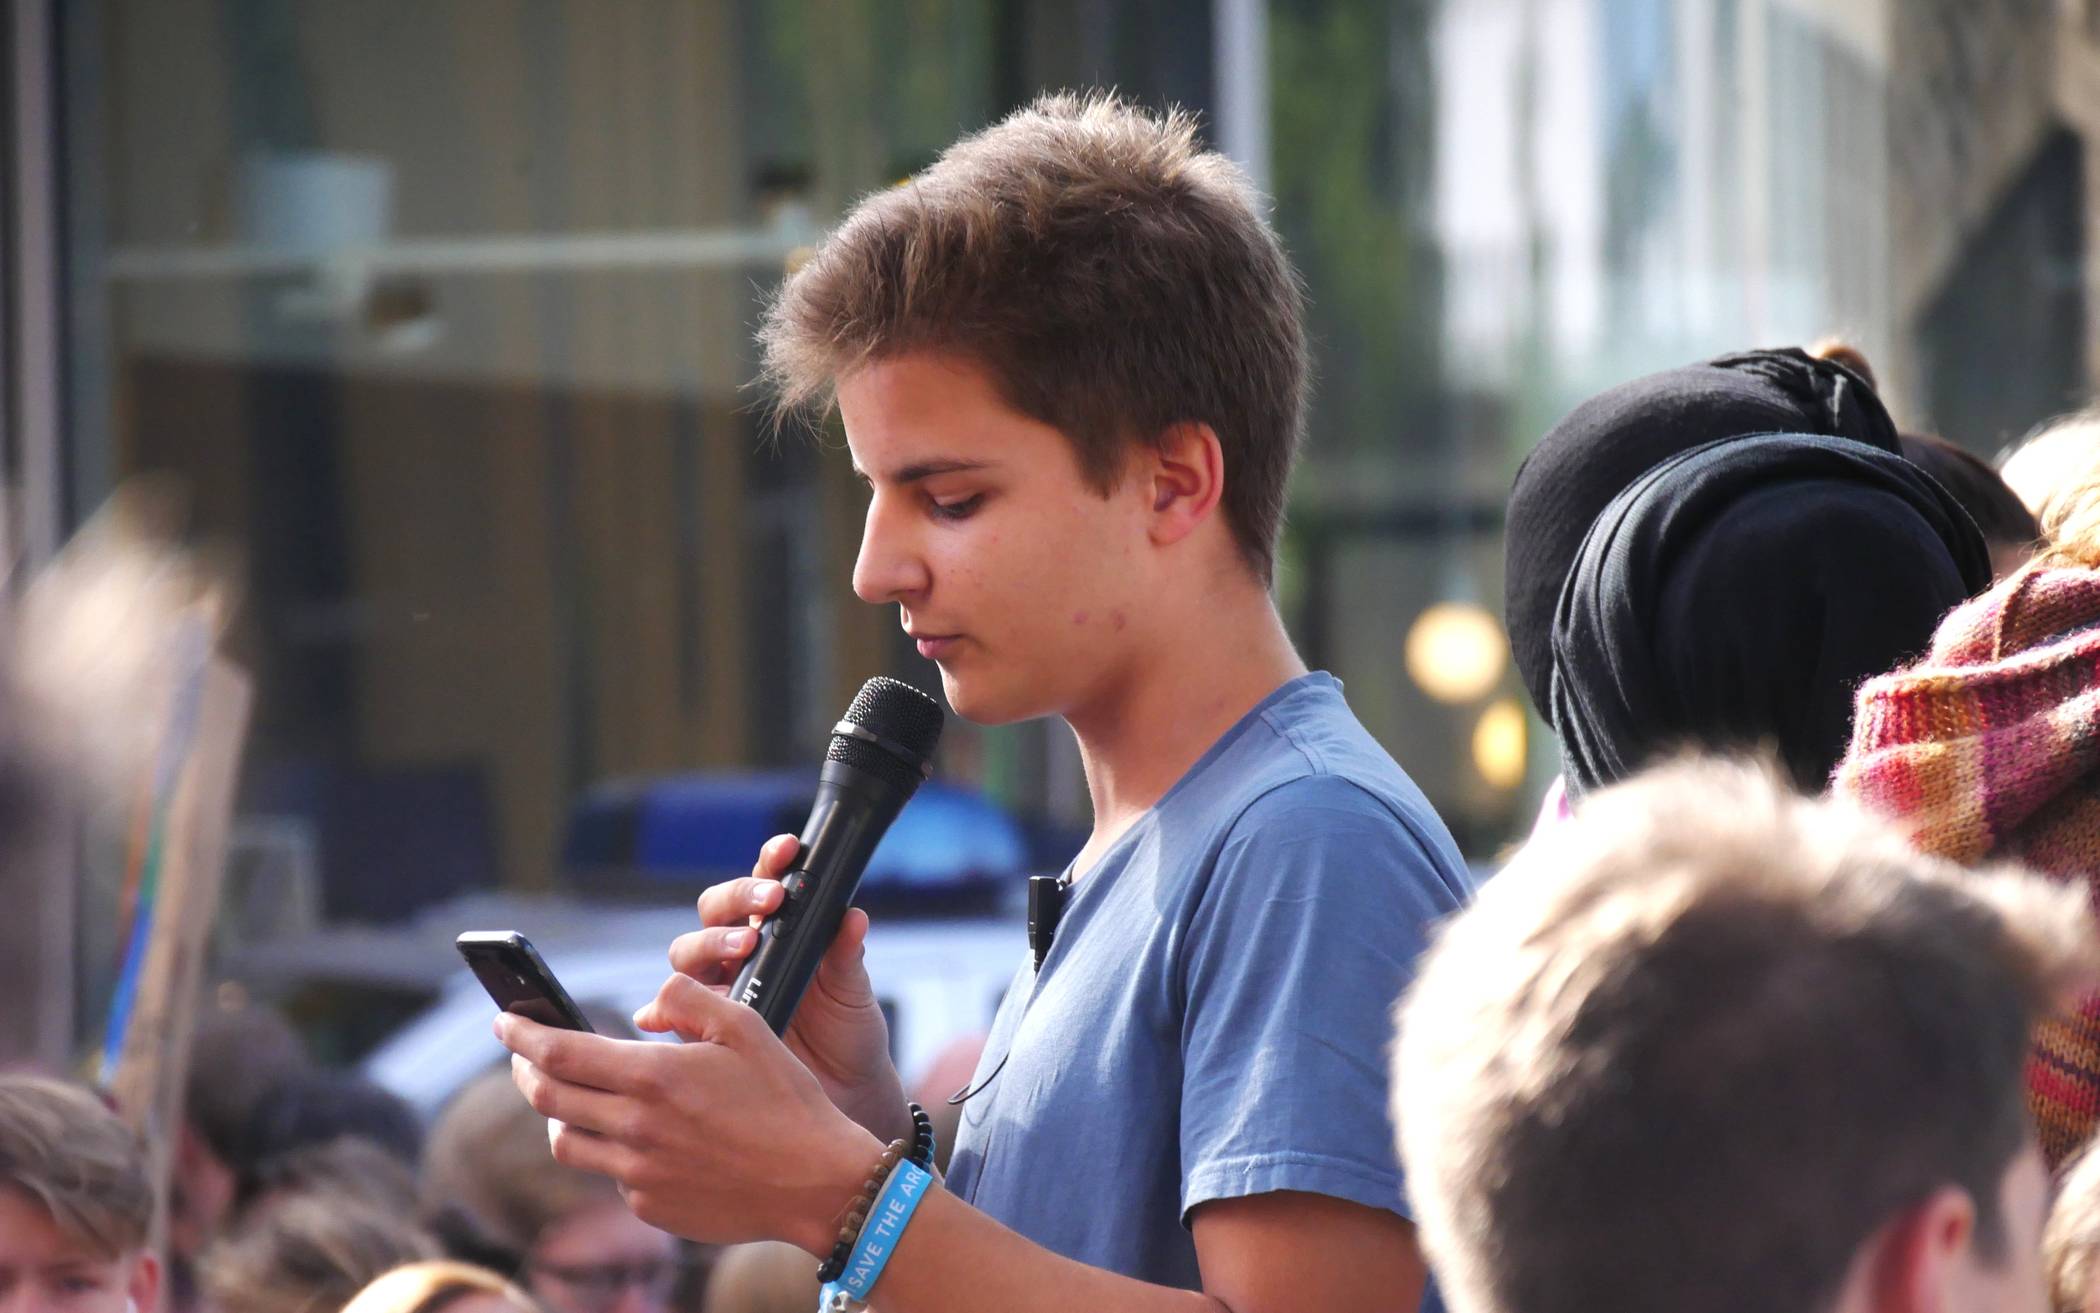  Jonah Näckel (19) ist einer der Initiatoren der Wuppertaler Fridays for Future Bewegung und kämpft dafür, dass die Forderungen der Bewegung auch in Corona-Zeiten gehört werden.  